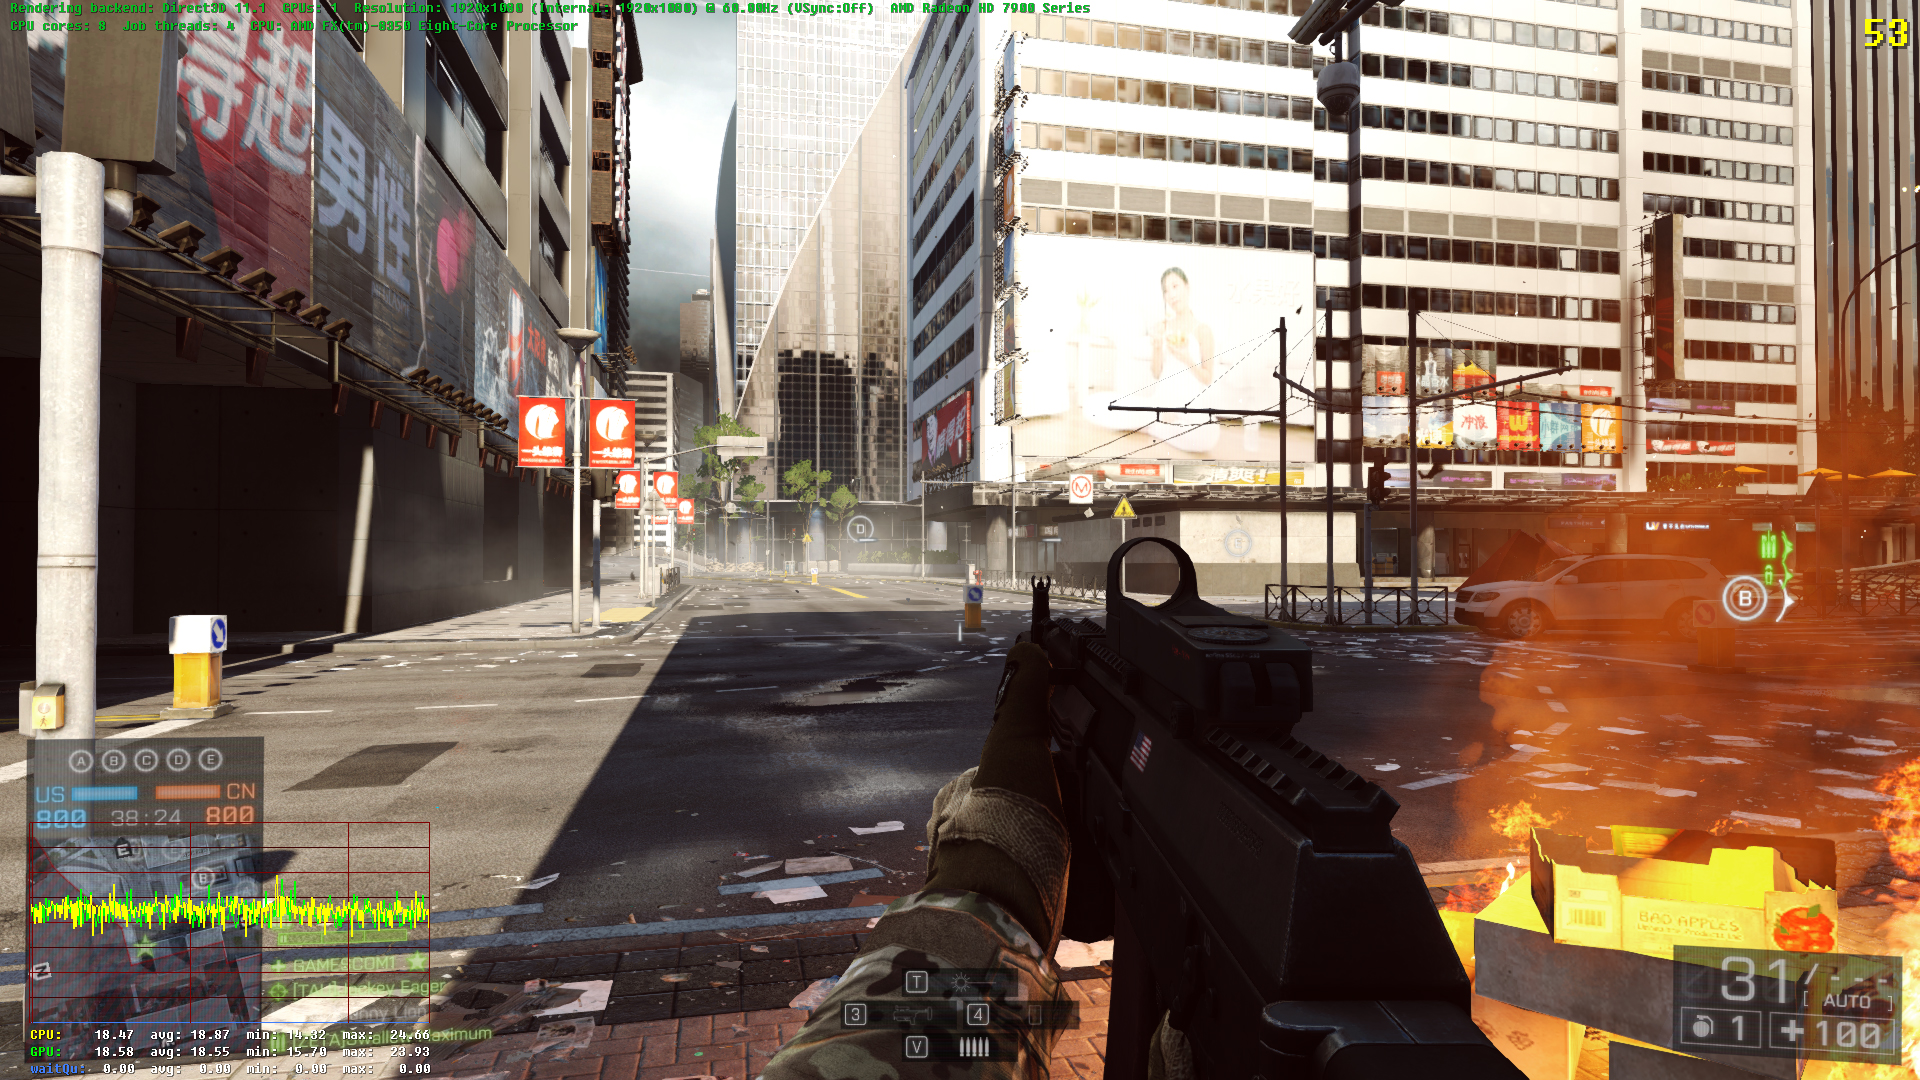 Battlefield 4 (PC)